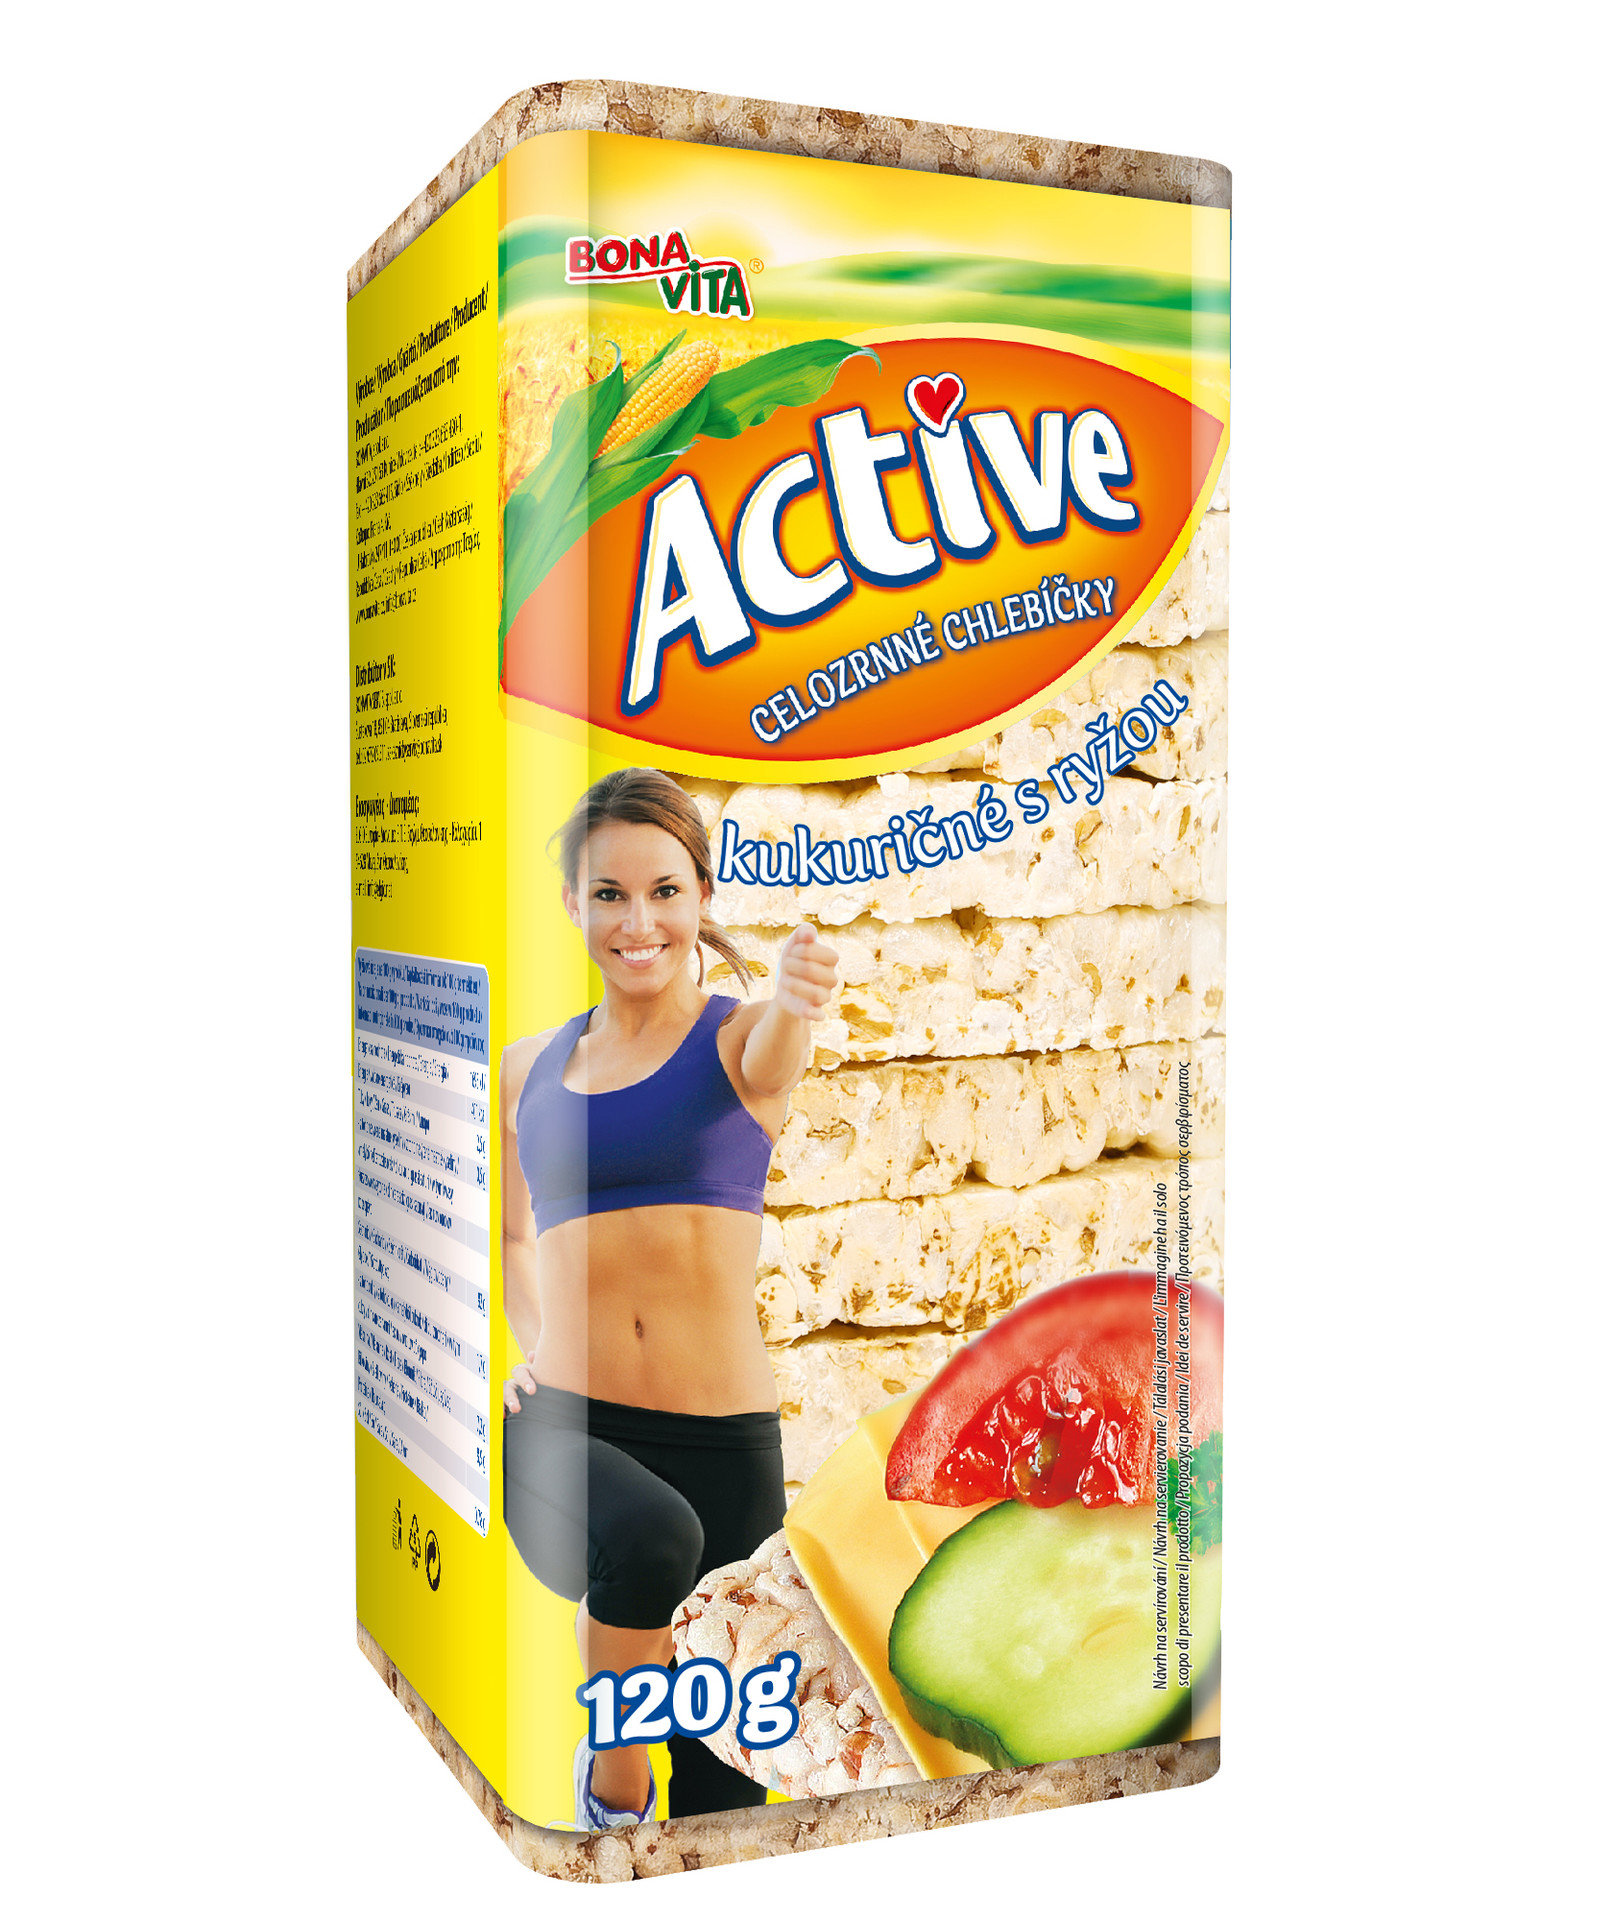 Bona Vita Active celozrnné chlebíčky 120g kukuričné s ryžou